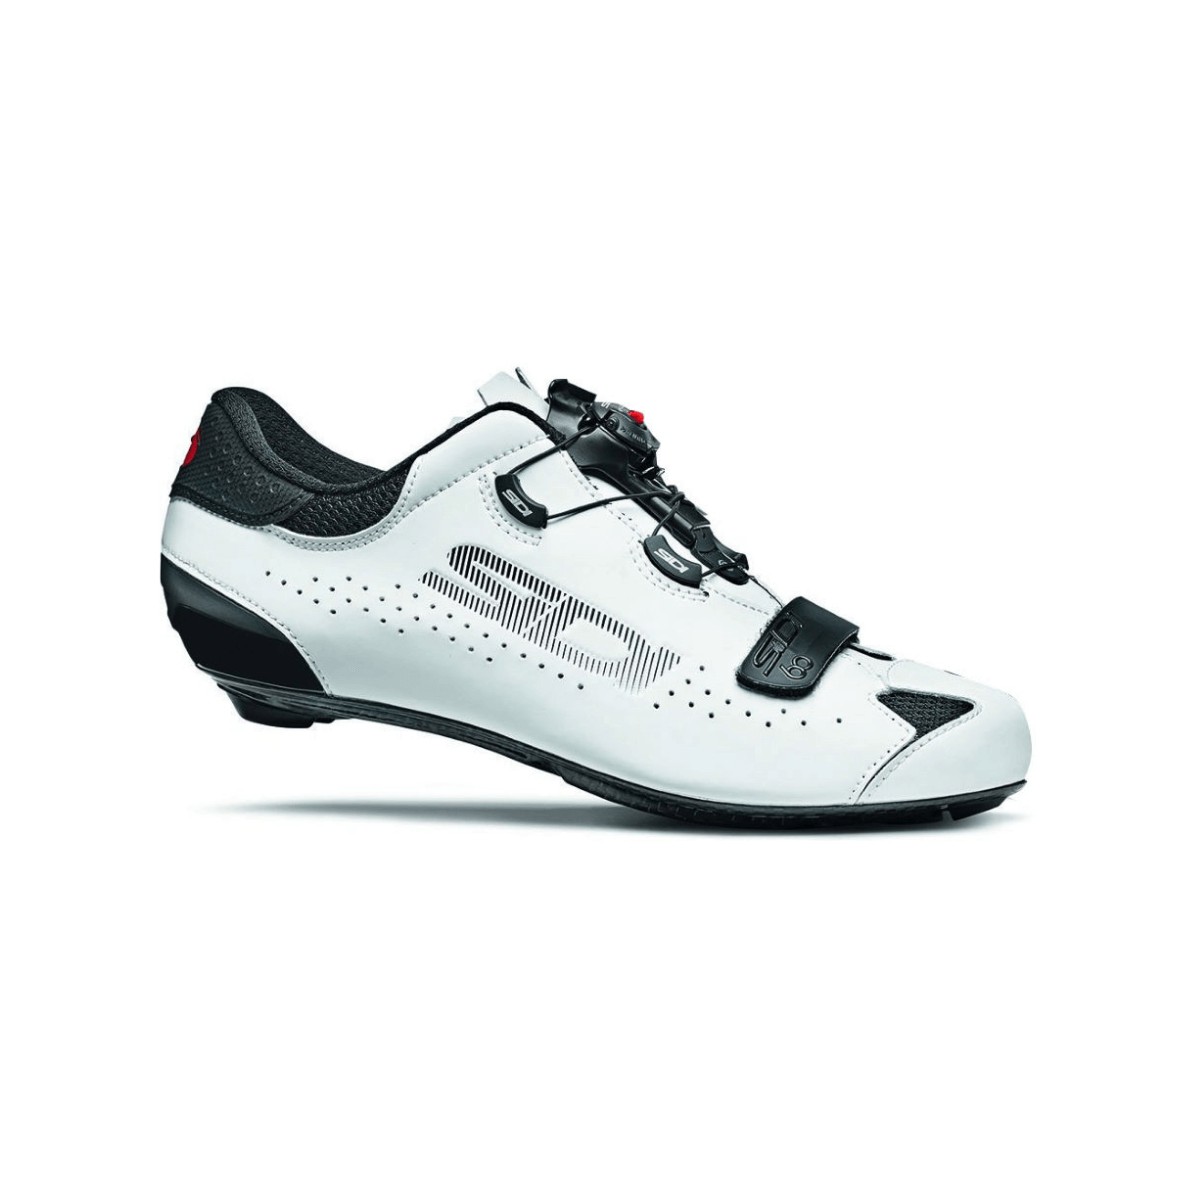 Sidi Sixty Schuhe Schwarz Weiß, Größe 41 - EUR